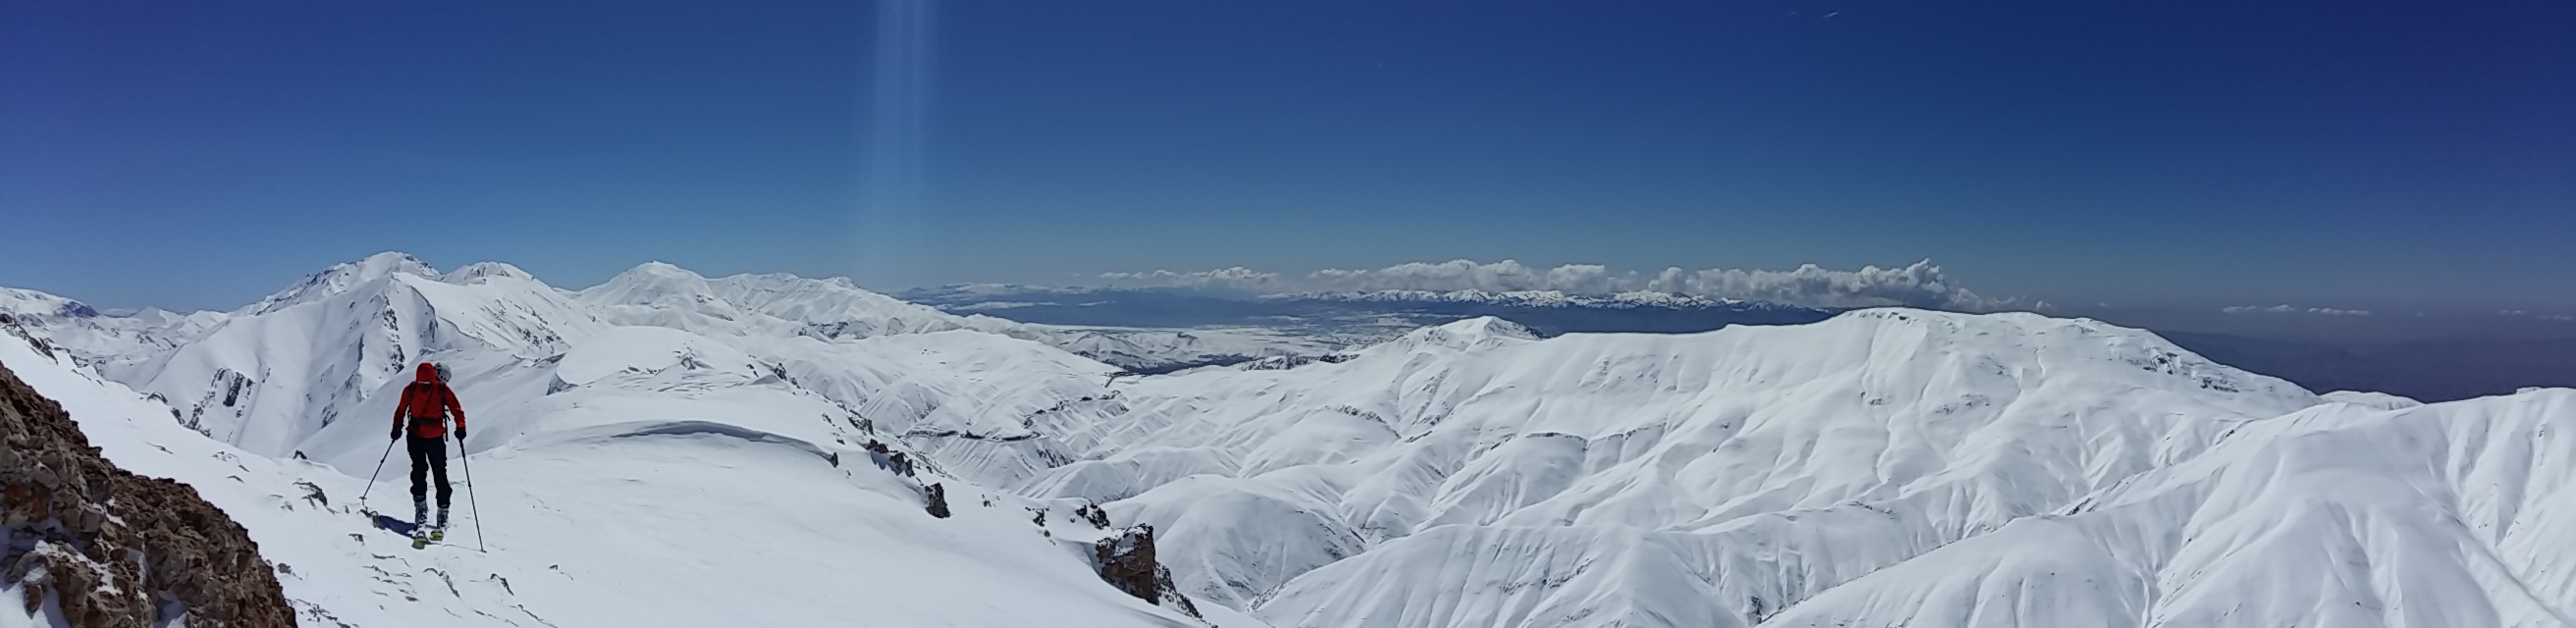 Ski Tours in Iran: Climb Mt. Damavand